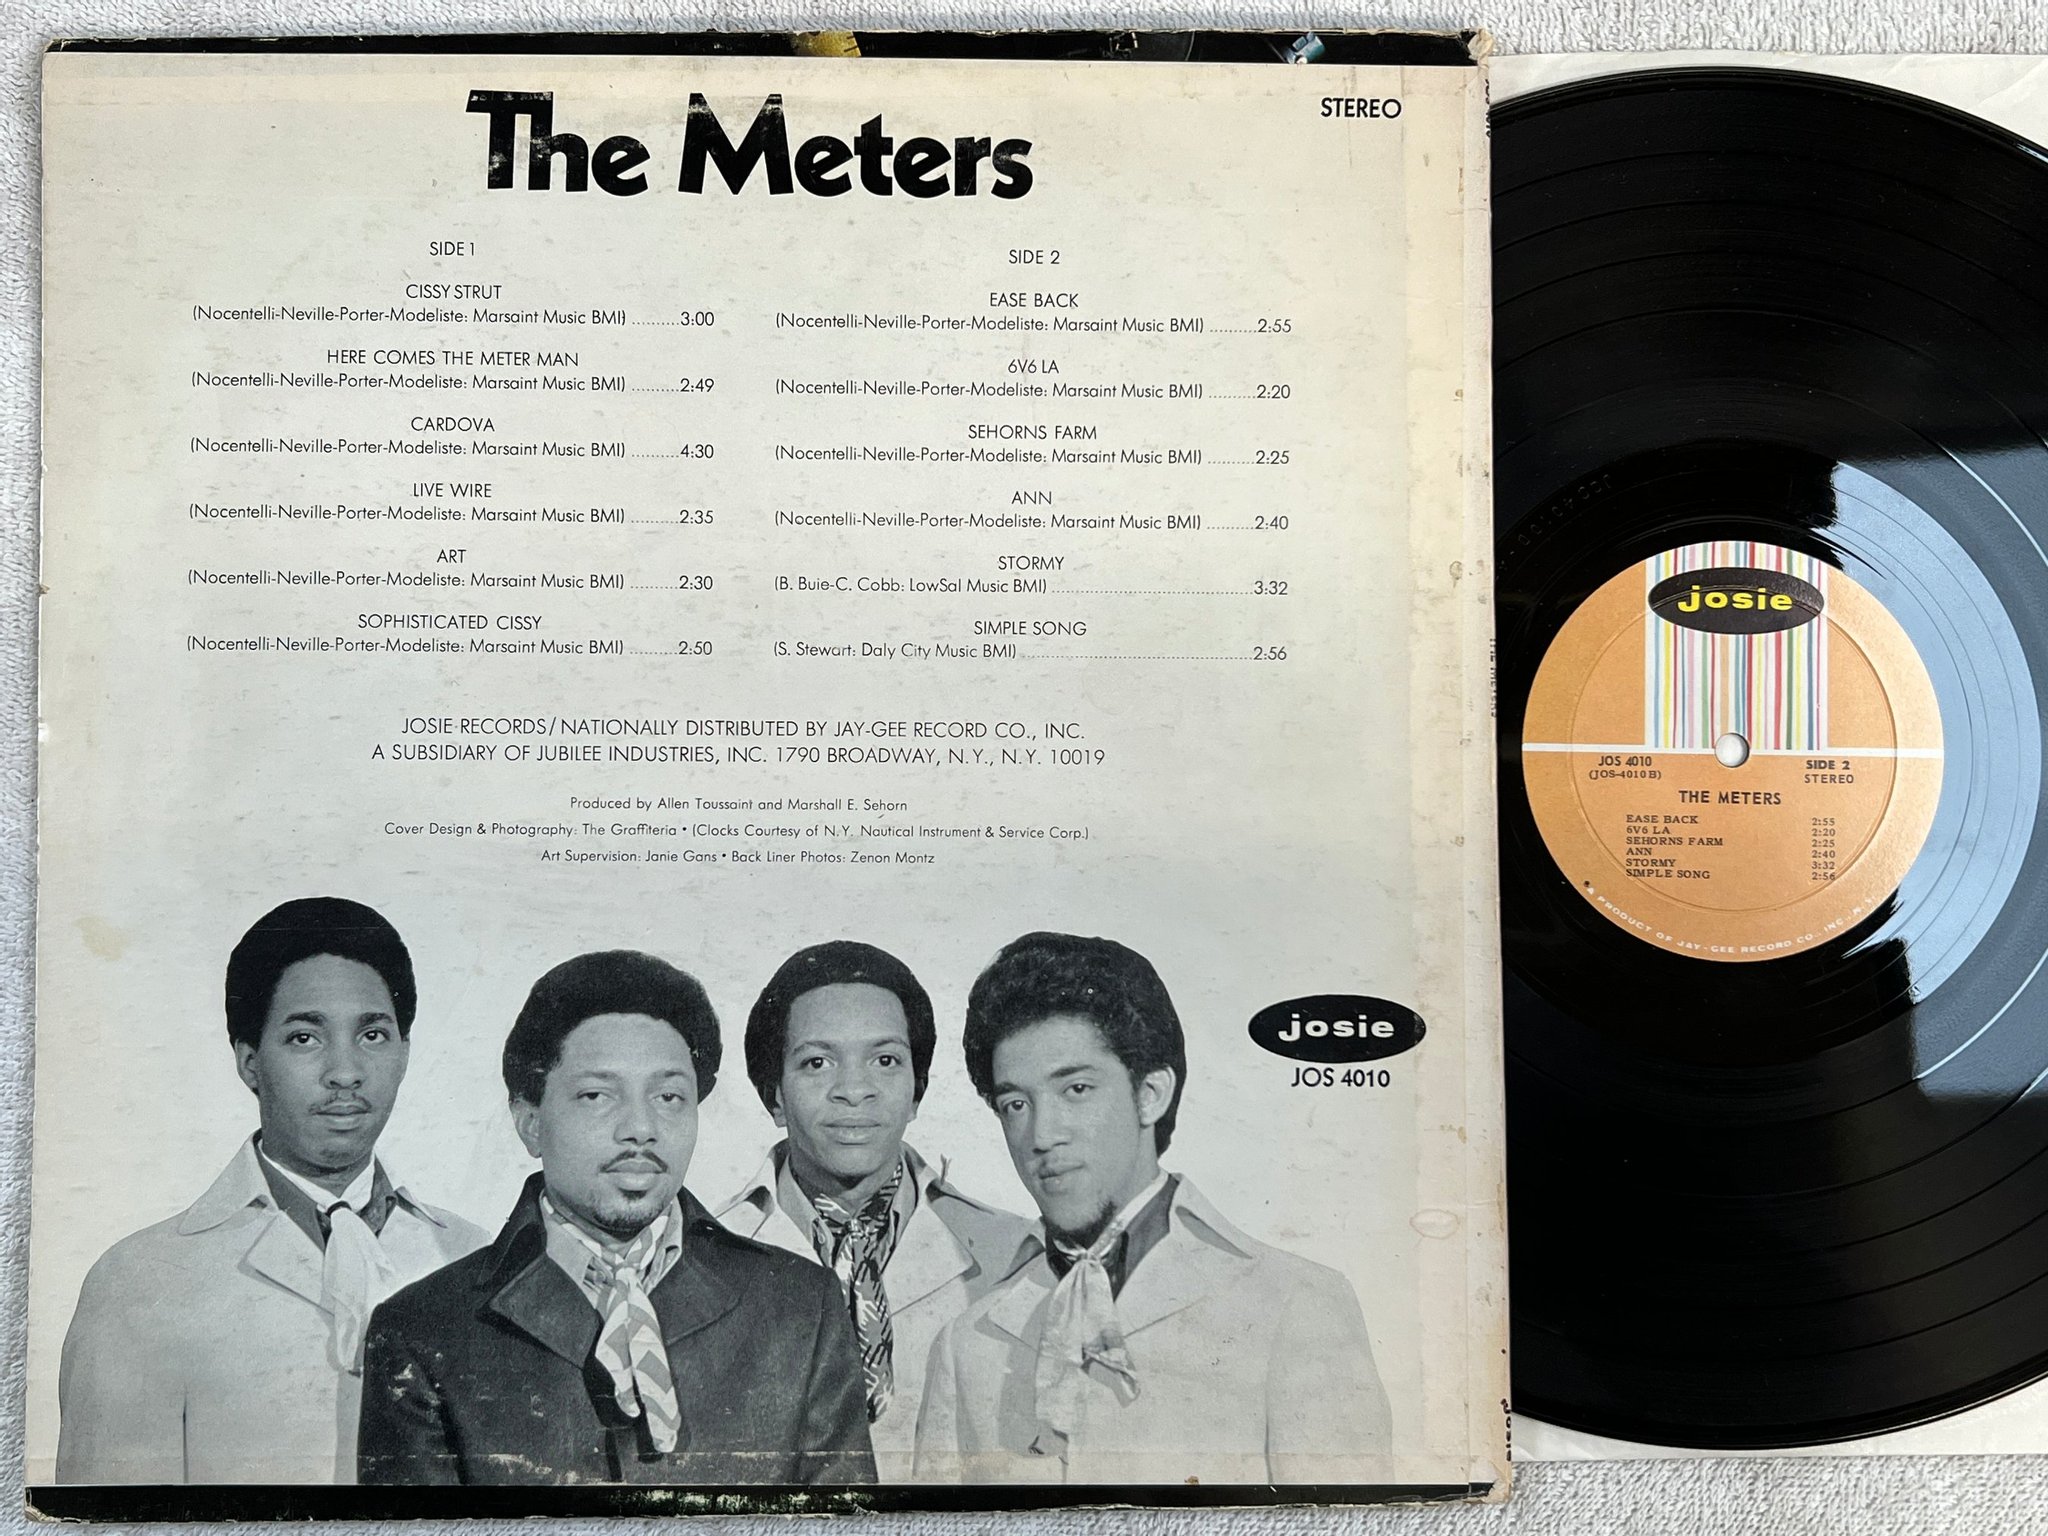 Omslagsbild för skivan THE METERS s/t LP -69 US JOSIE JOS 4010 **** intense funk classic *** OG COPY